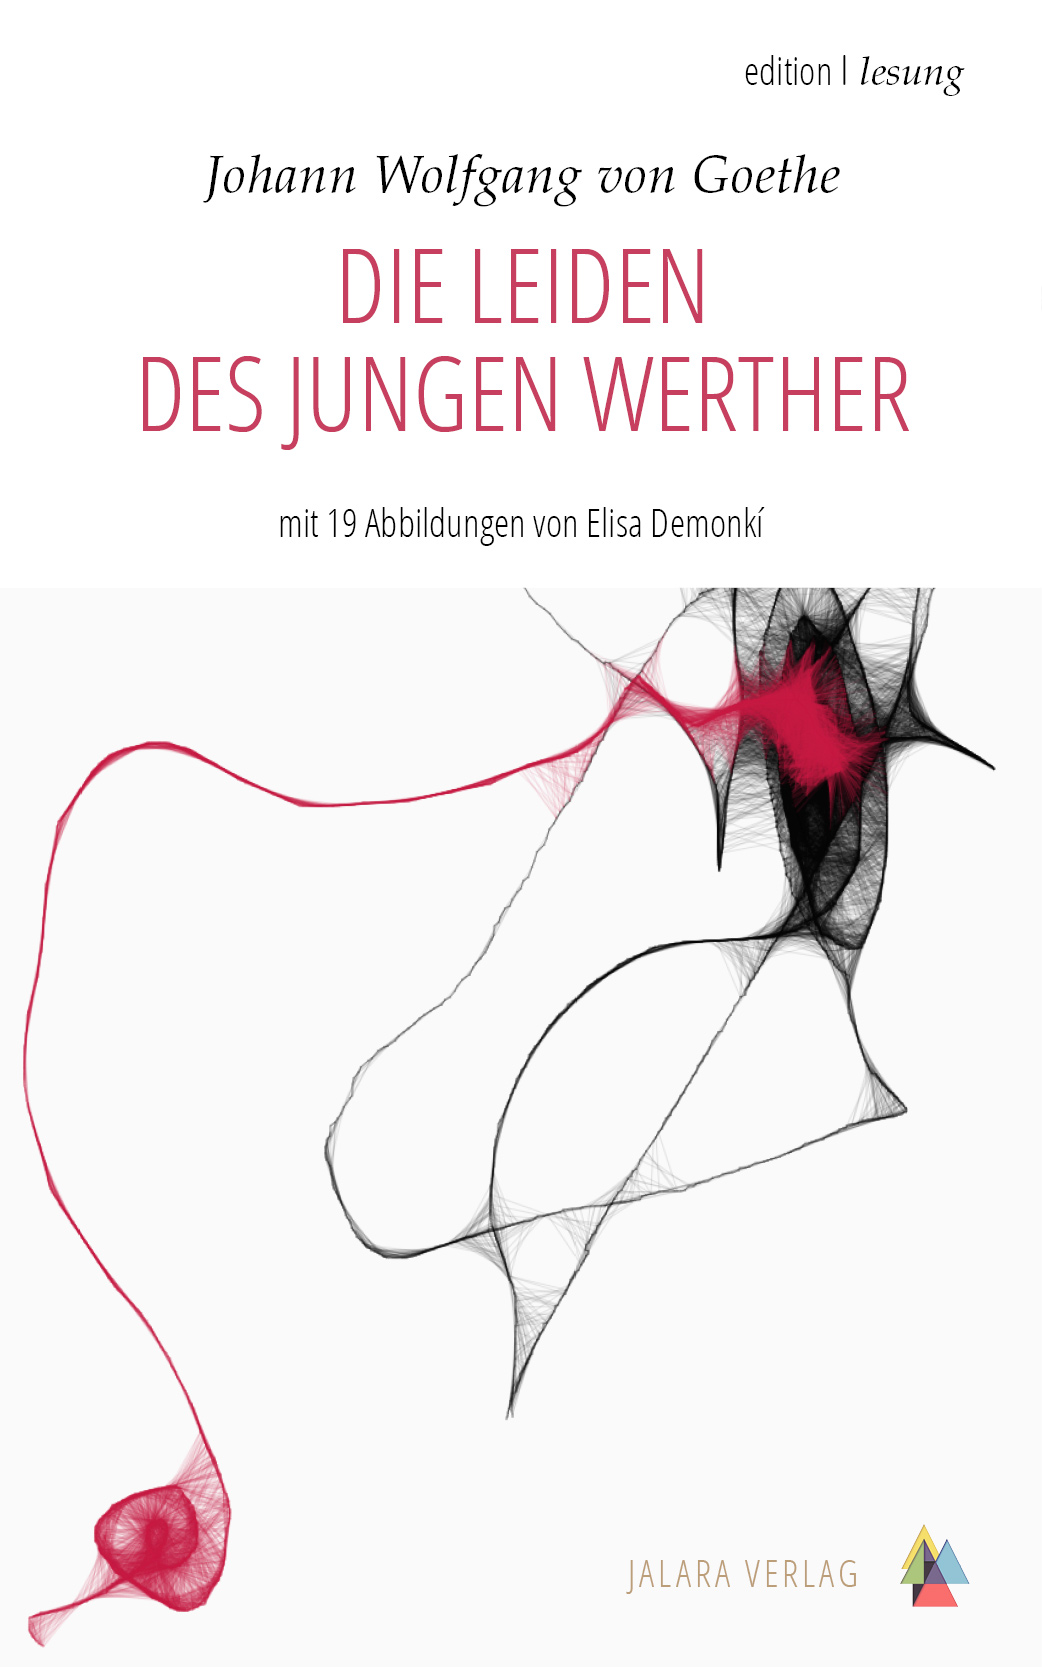 Die Leiden des des jungen Werther von J. W. Goethe werthers jalara verlag kostenlos kostenloser download ebook